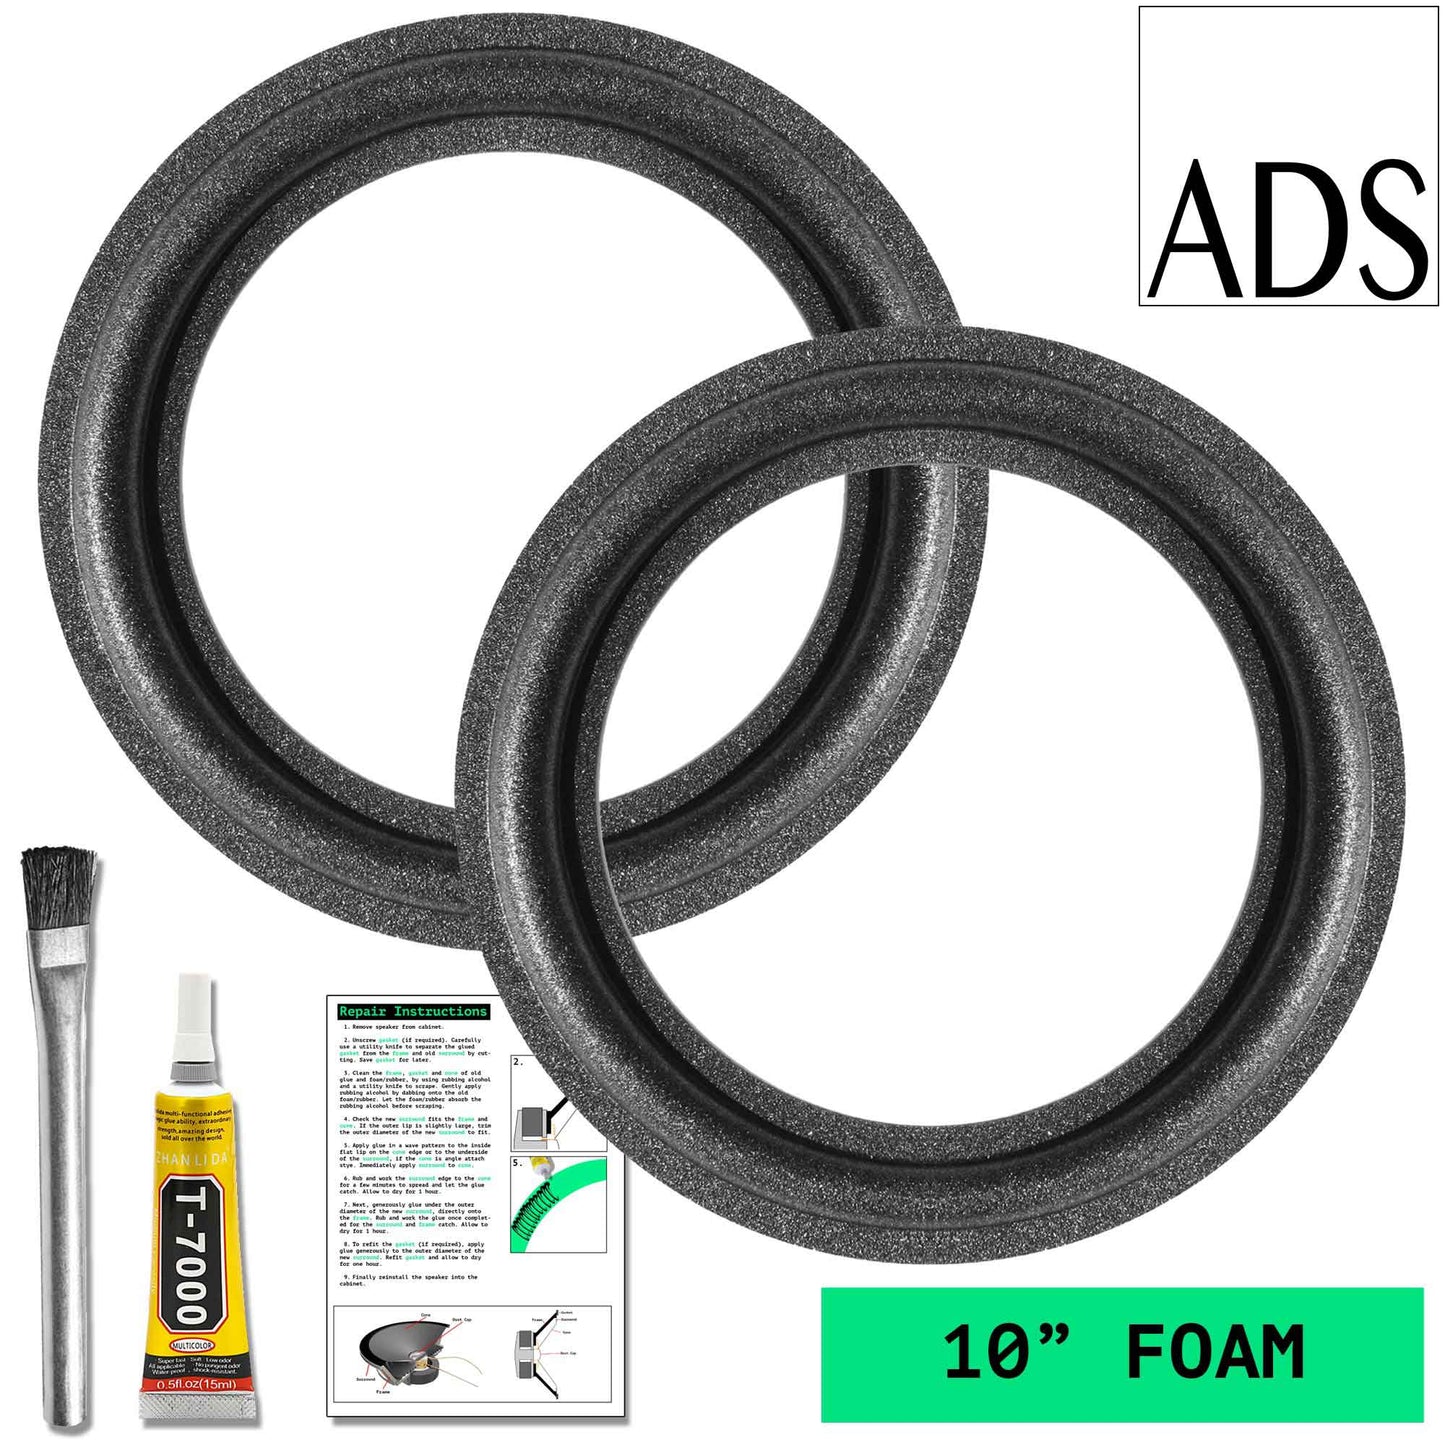 ADS 10" Foam Repair Kit